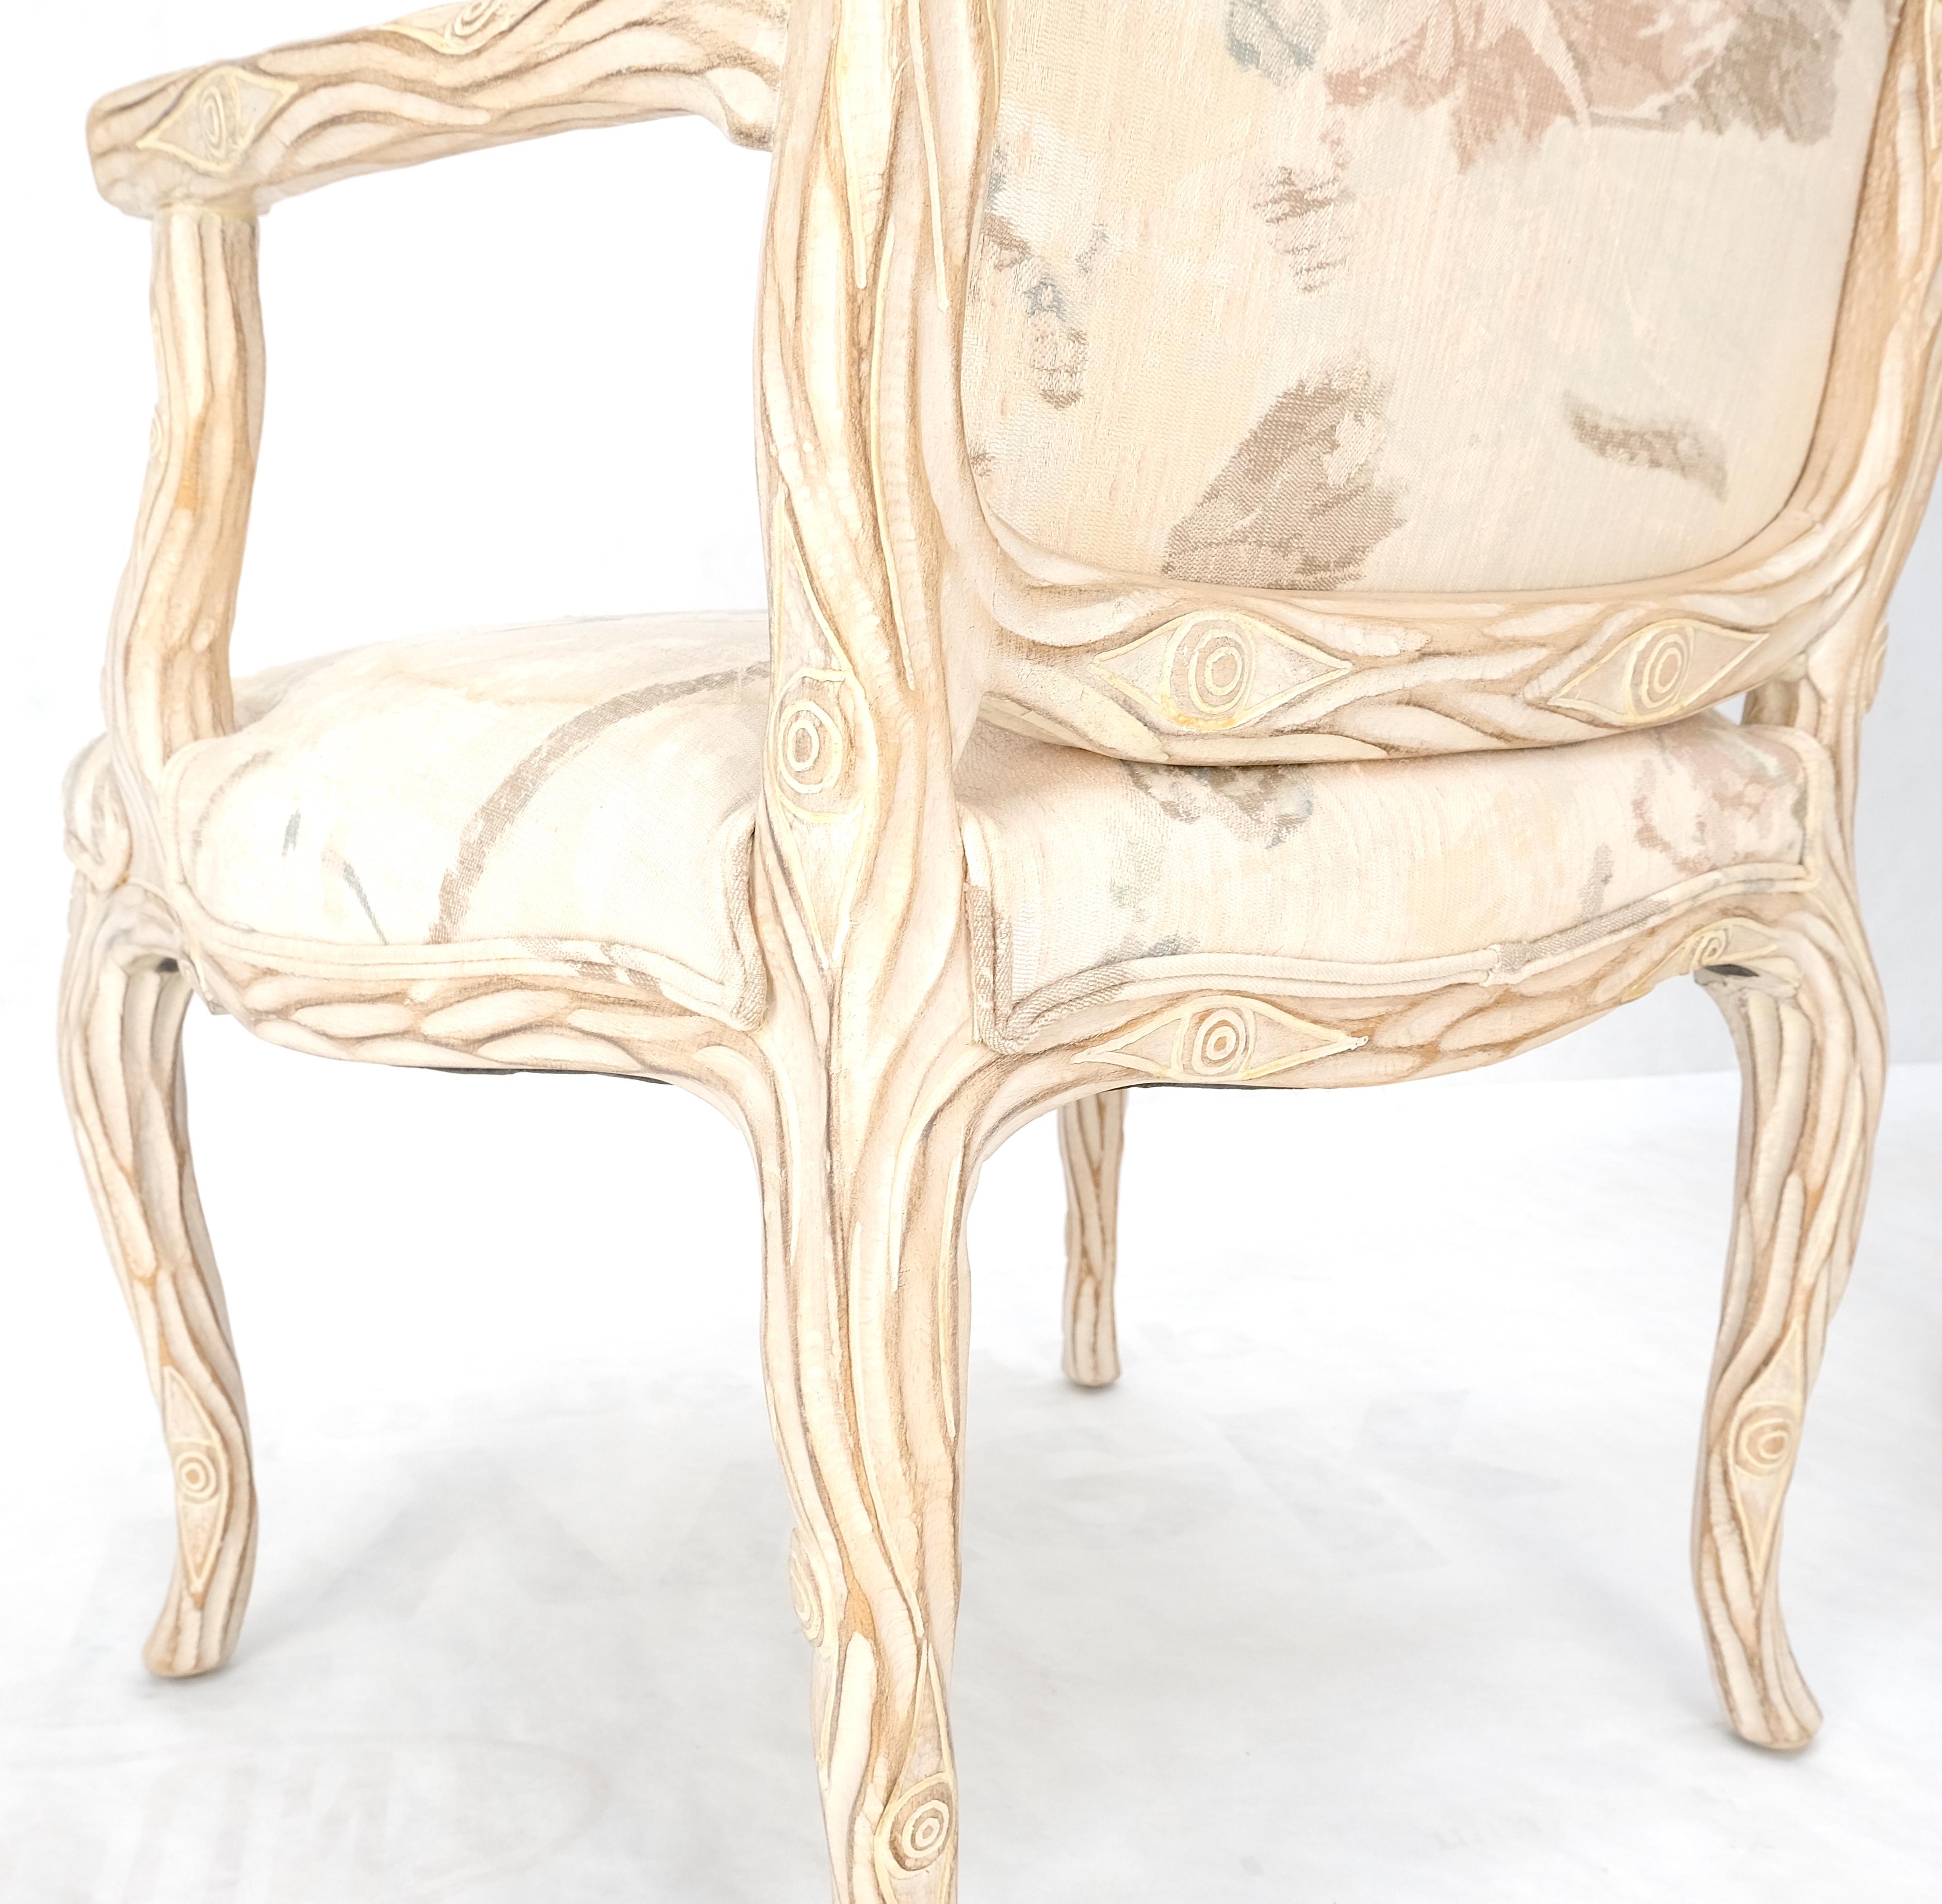 Faux geschnitzt Zweig Holz & Auge Thema Arm Lounge Kamin Sessel White Wash.
Frames sind neuwertig Polsterung zeigt Anzeichen von Verschleiß.